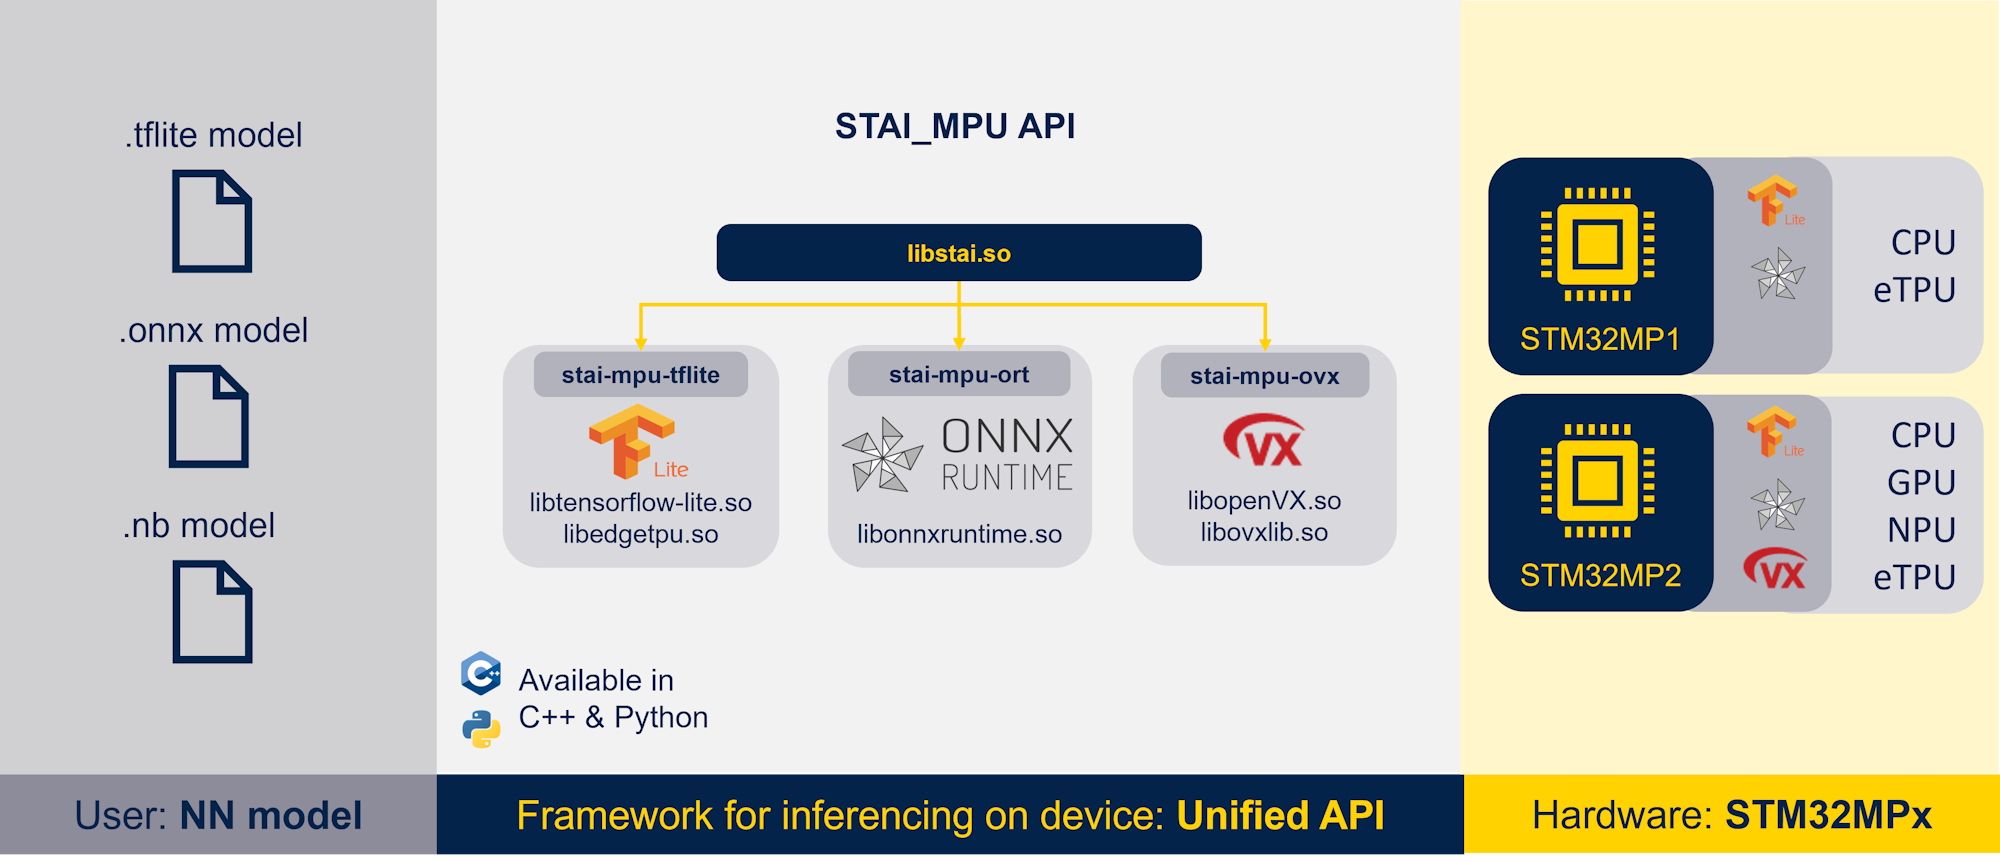 STAI_MPU API Overview